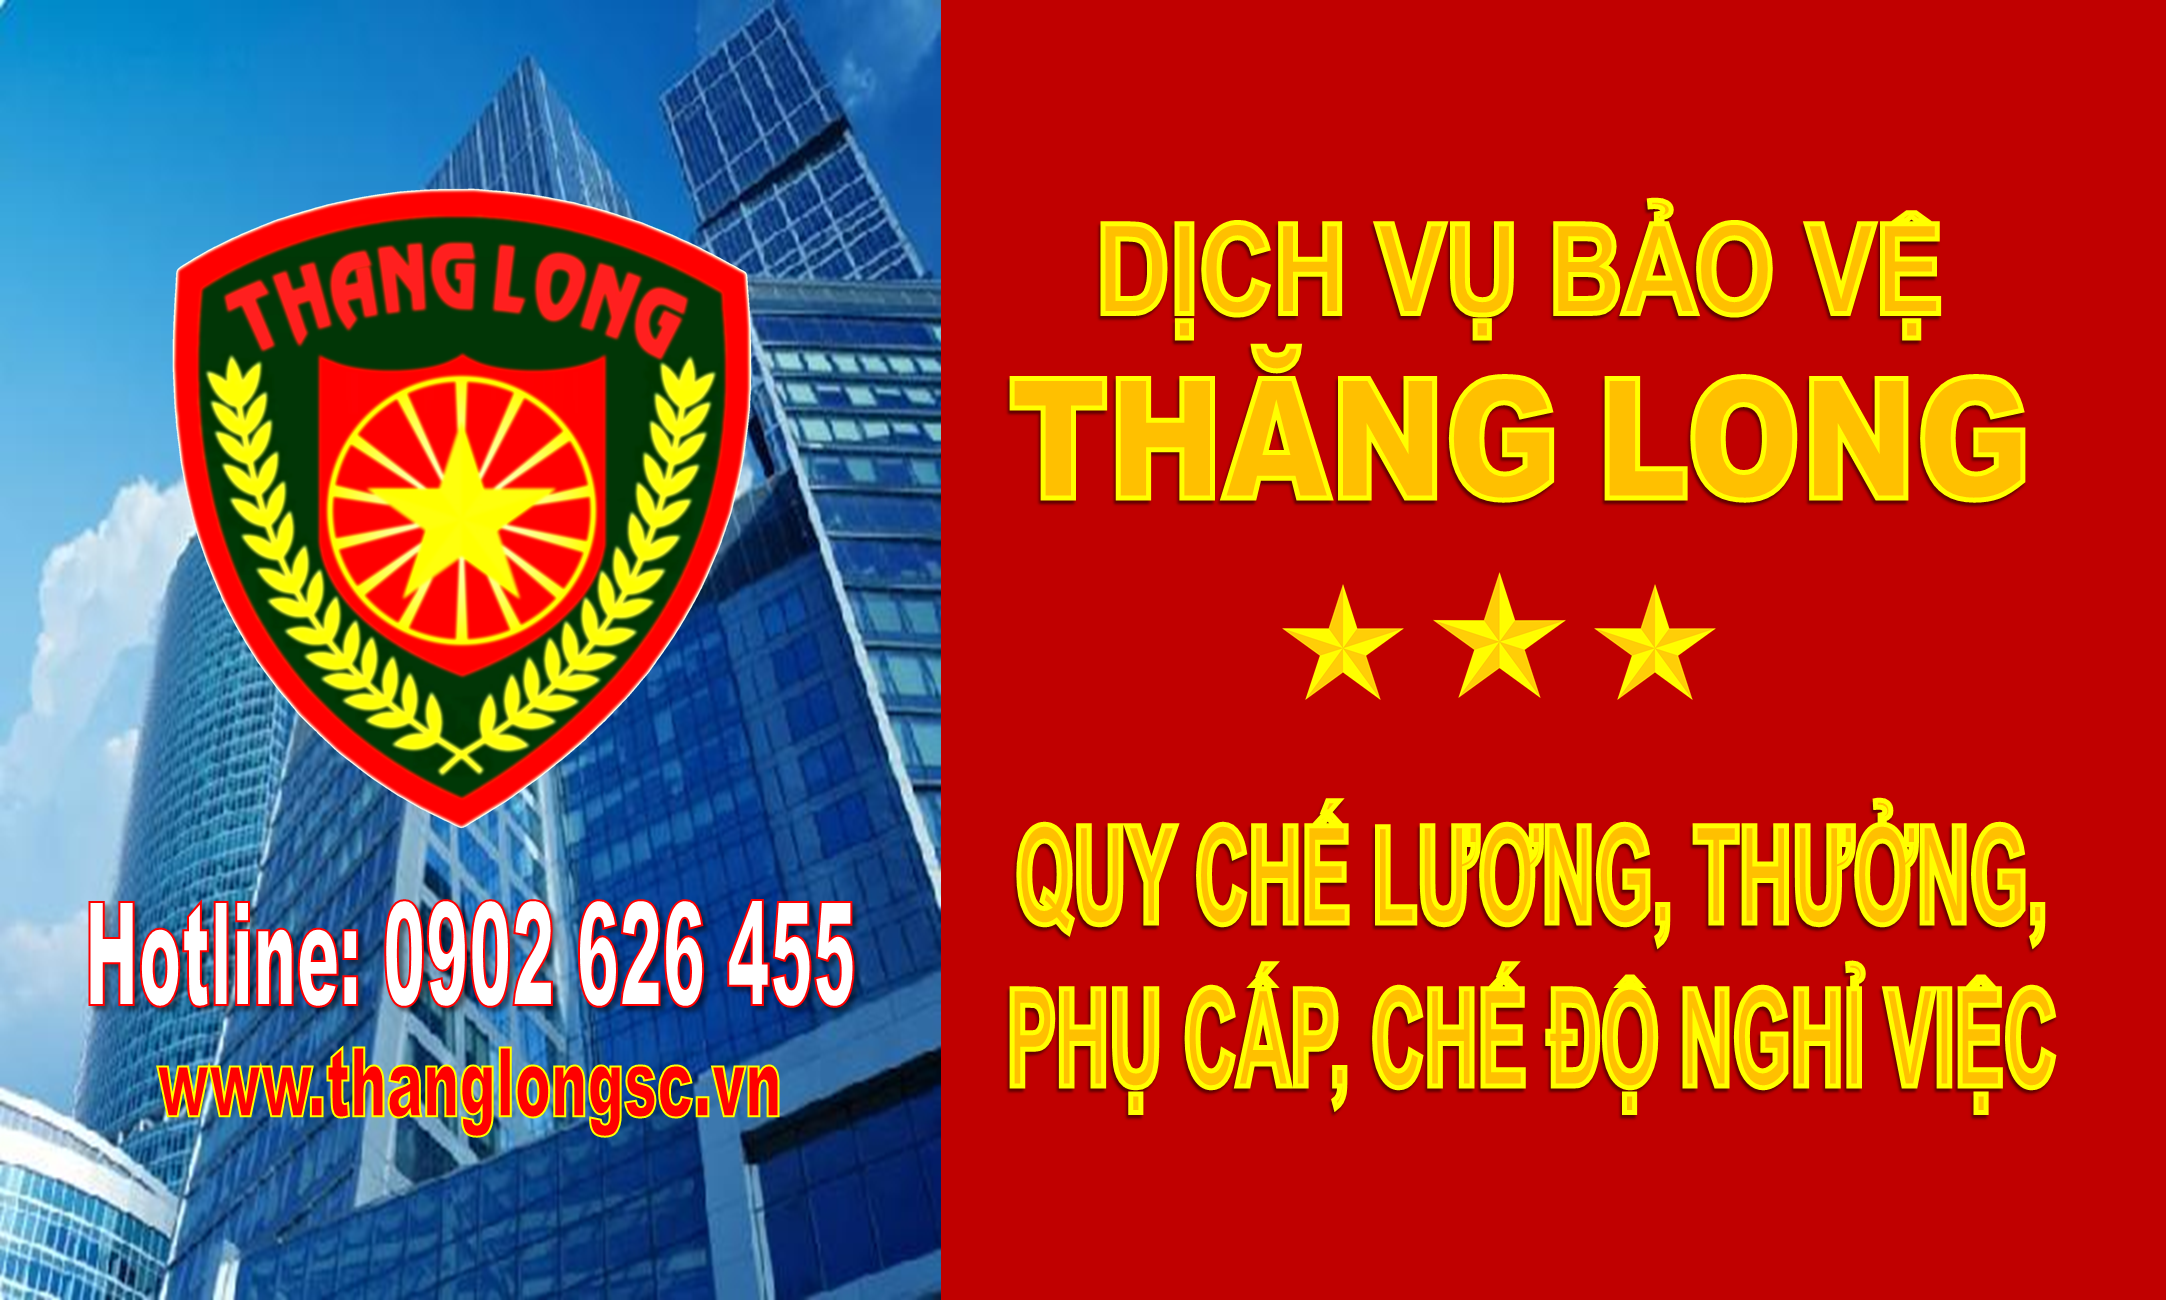 Luong Thuong Phu Cap Nghi Viec